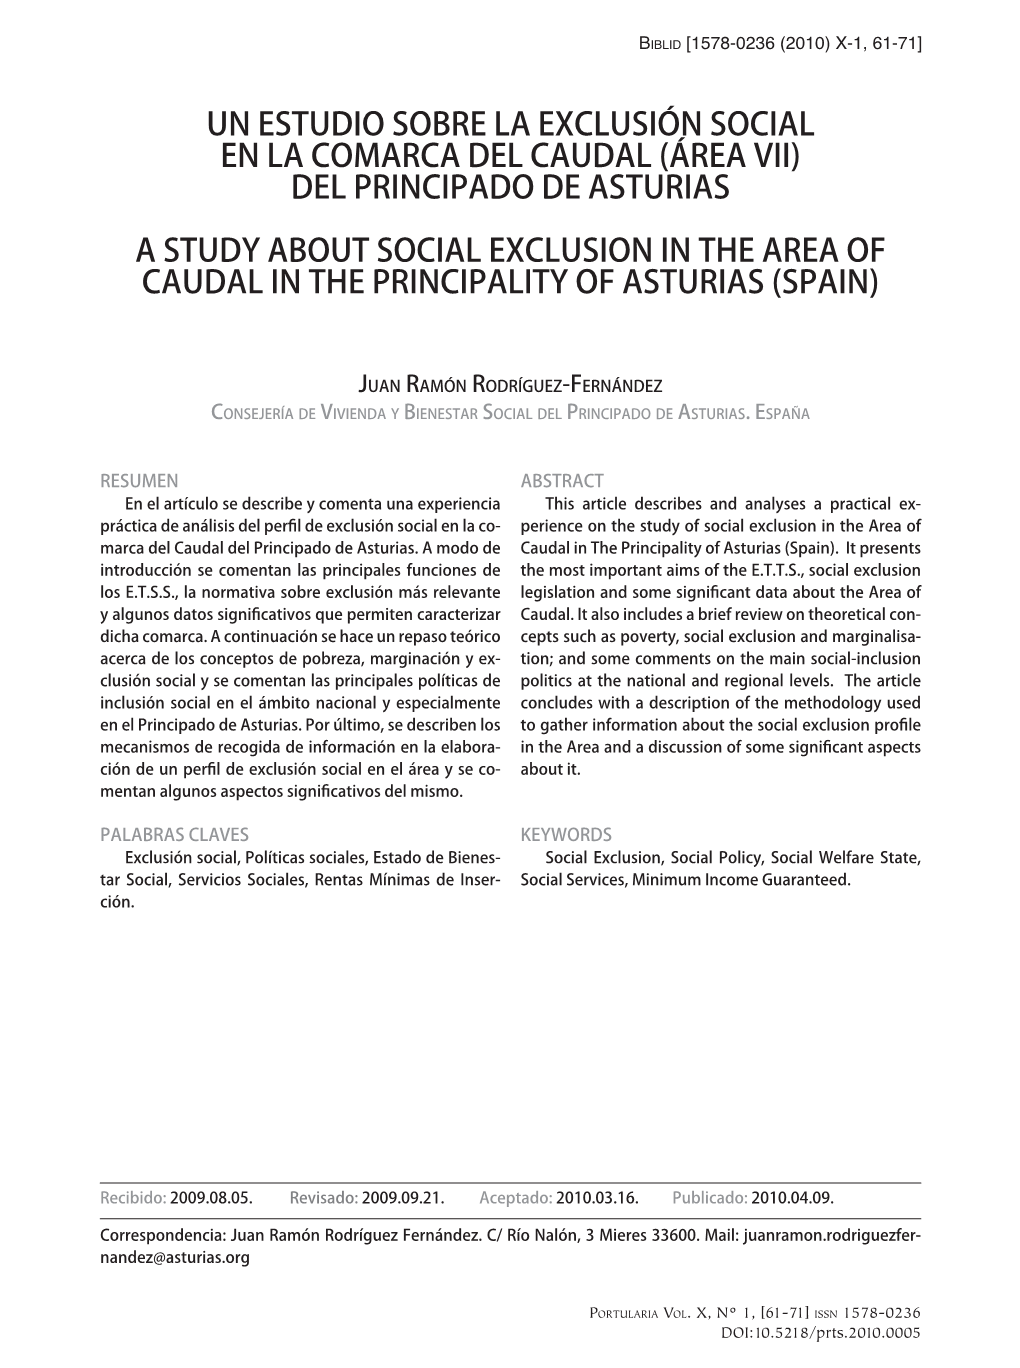 Un Estudio Sobre La Exclusión Social En La Comarca Del Caudal (Área